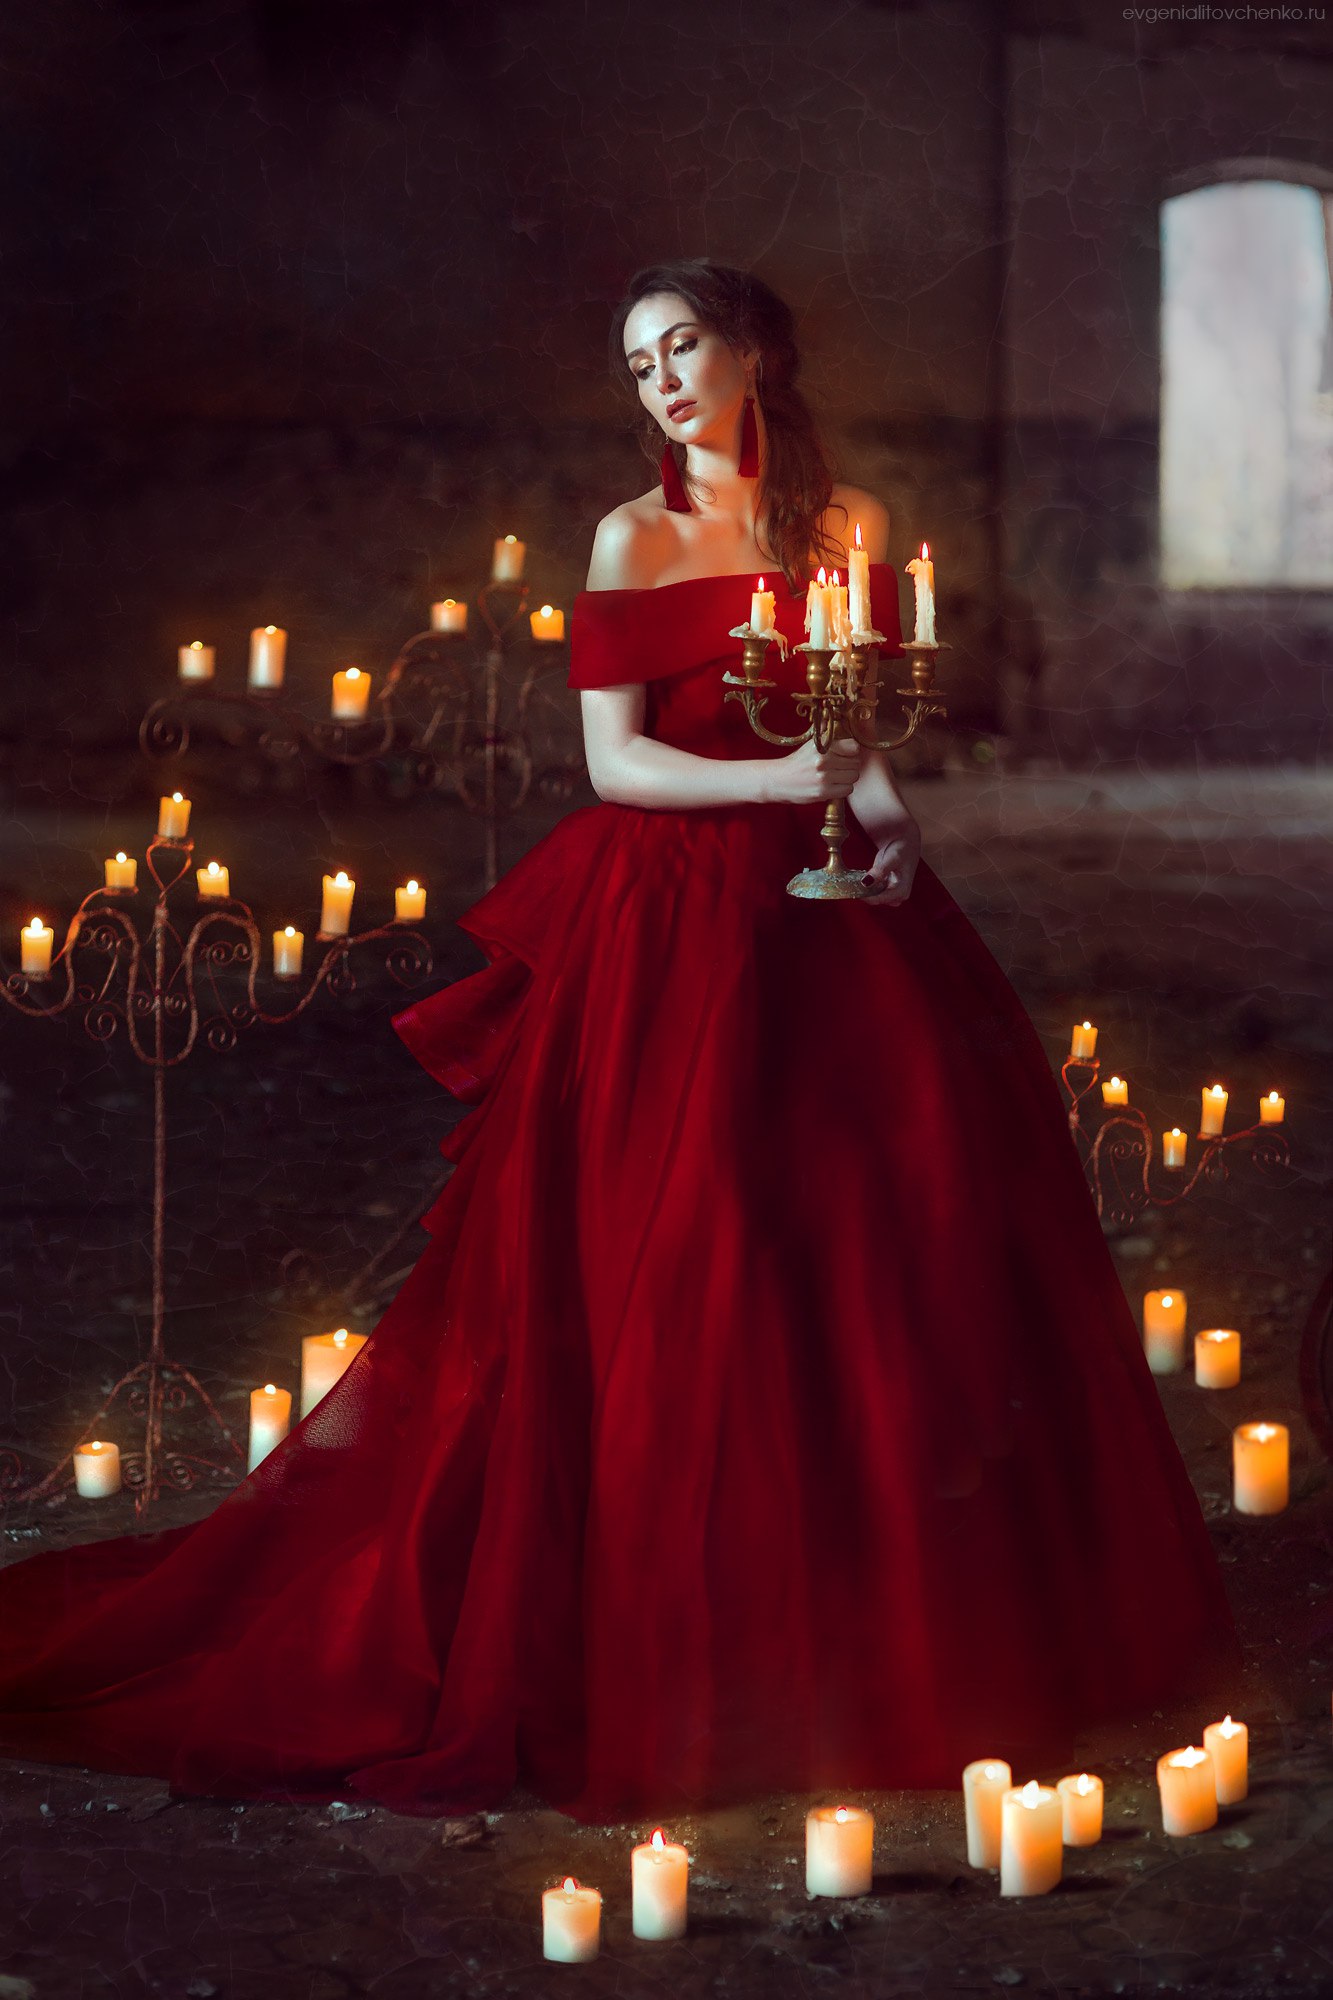 Фото Девушка в красном платье стоит в старом помещении в окружении свечей, держа в руках канделябр. Фотограф Евгения Литовченко / Evgeniya Litovchenko